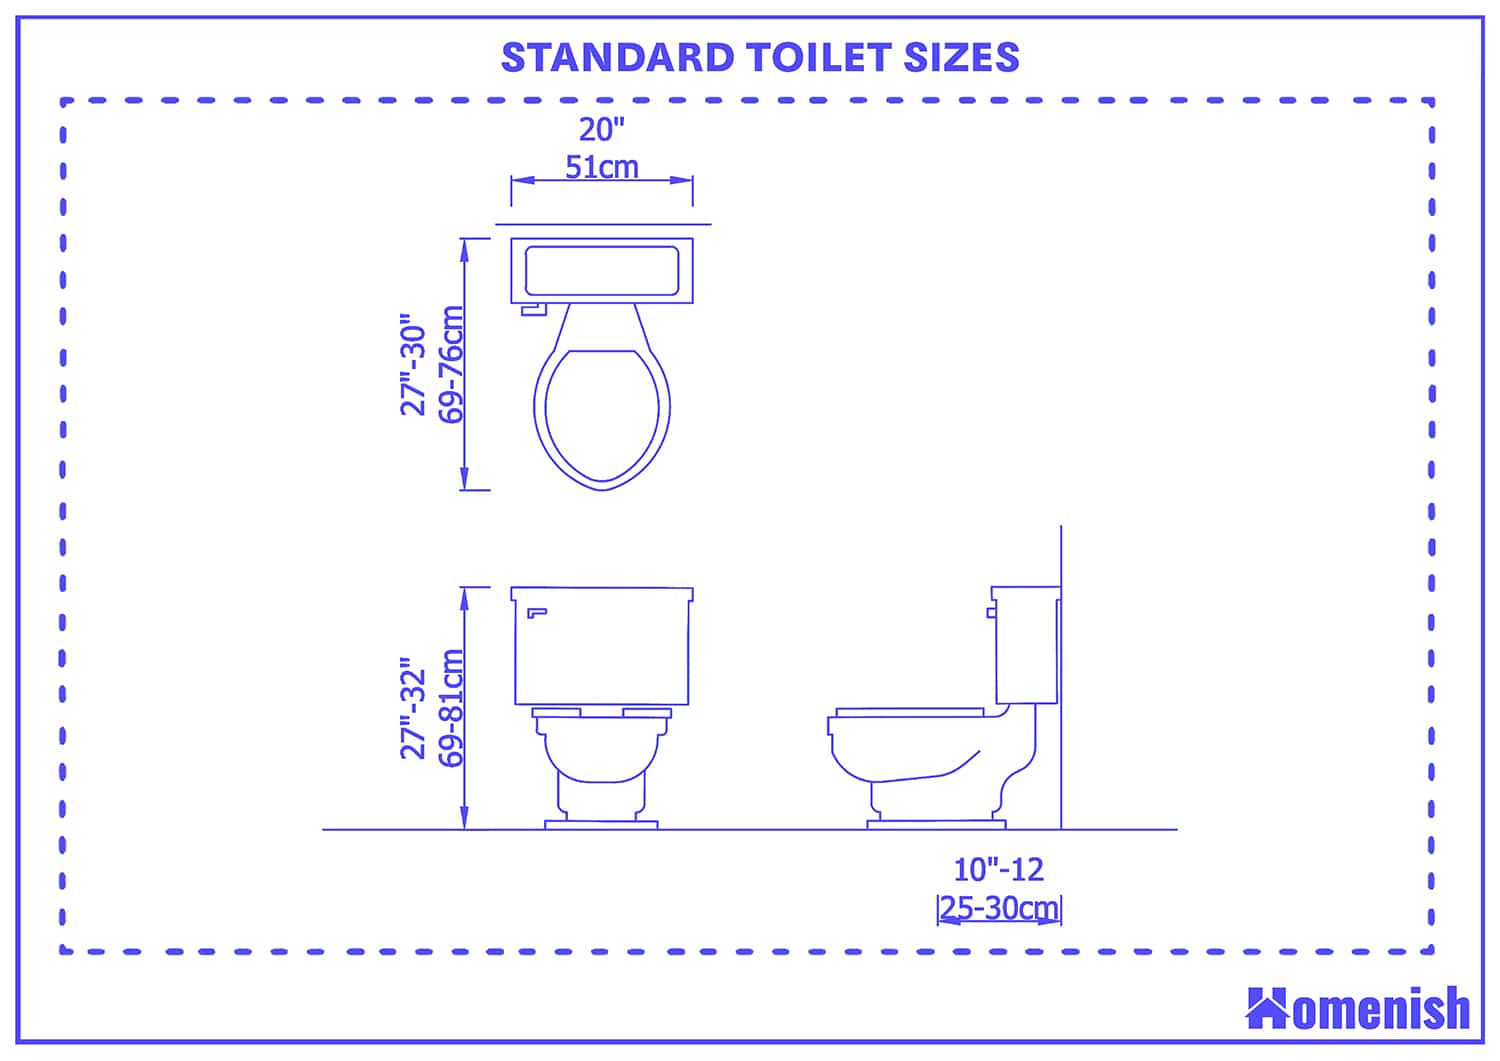 Standard toilet sizes